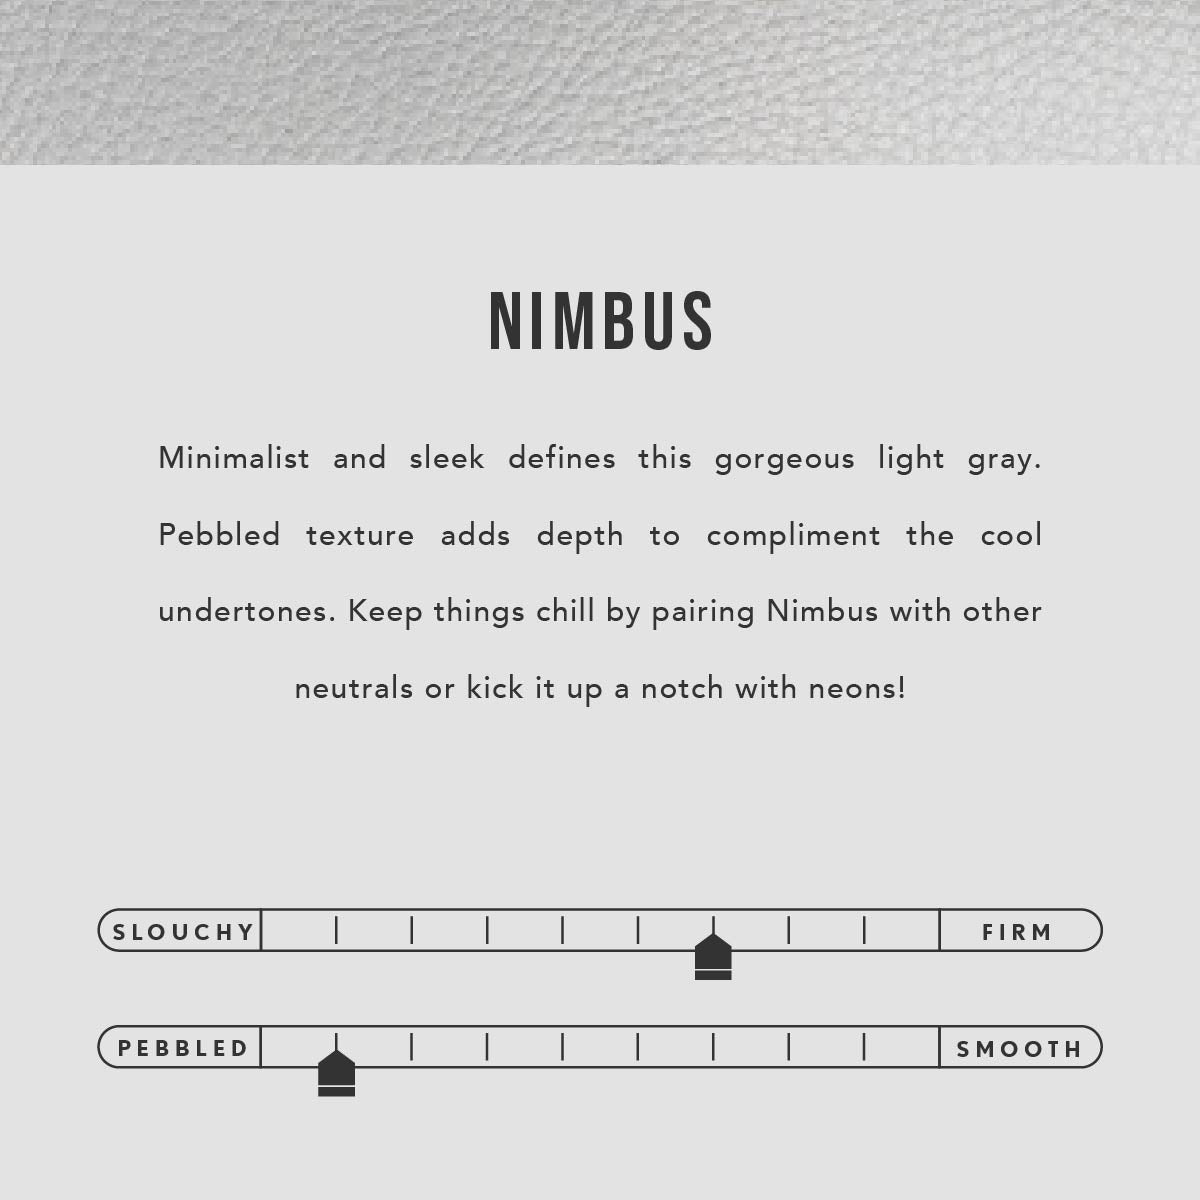 Nimbus | infographic